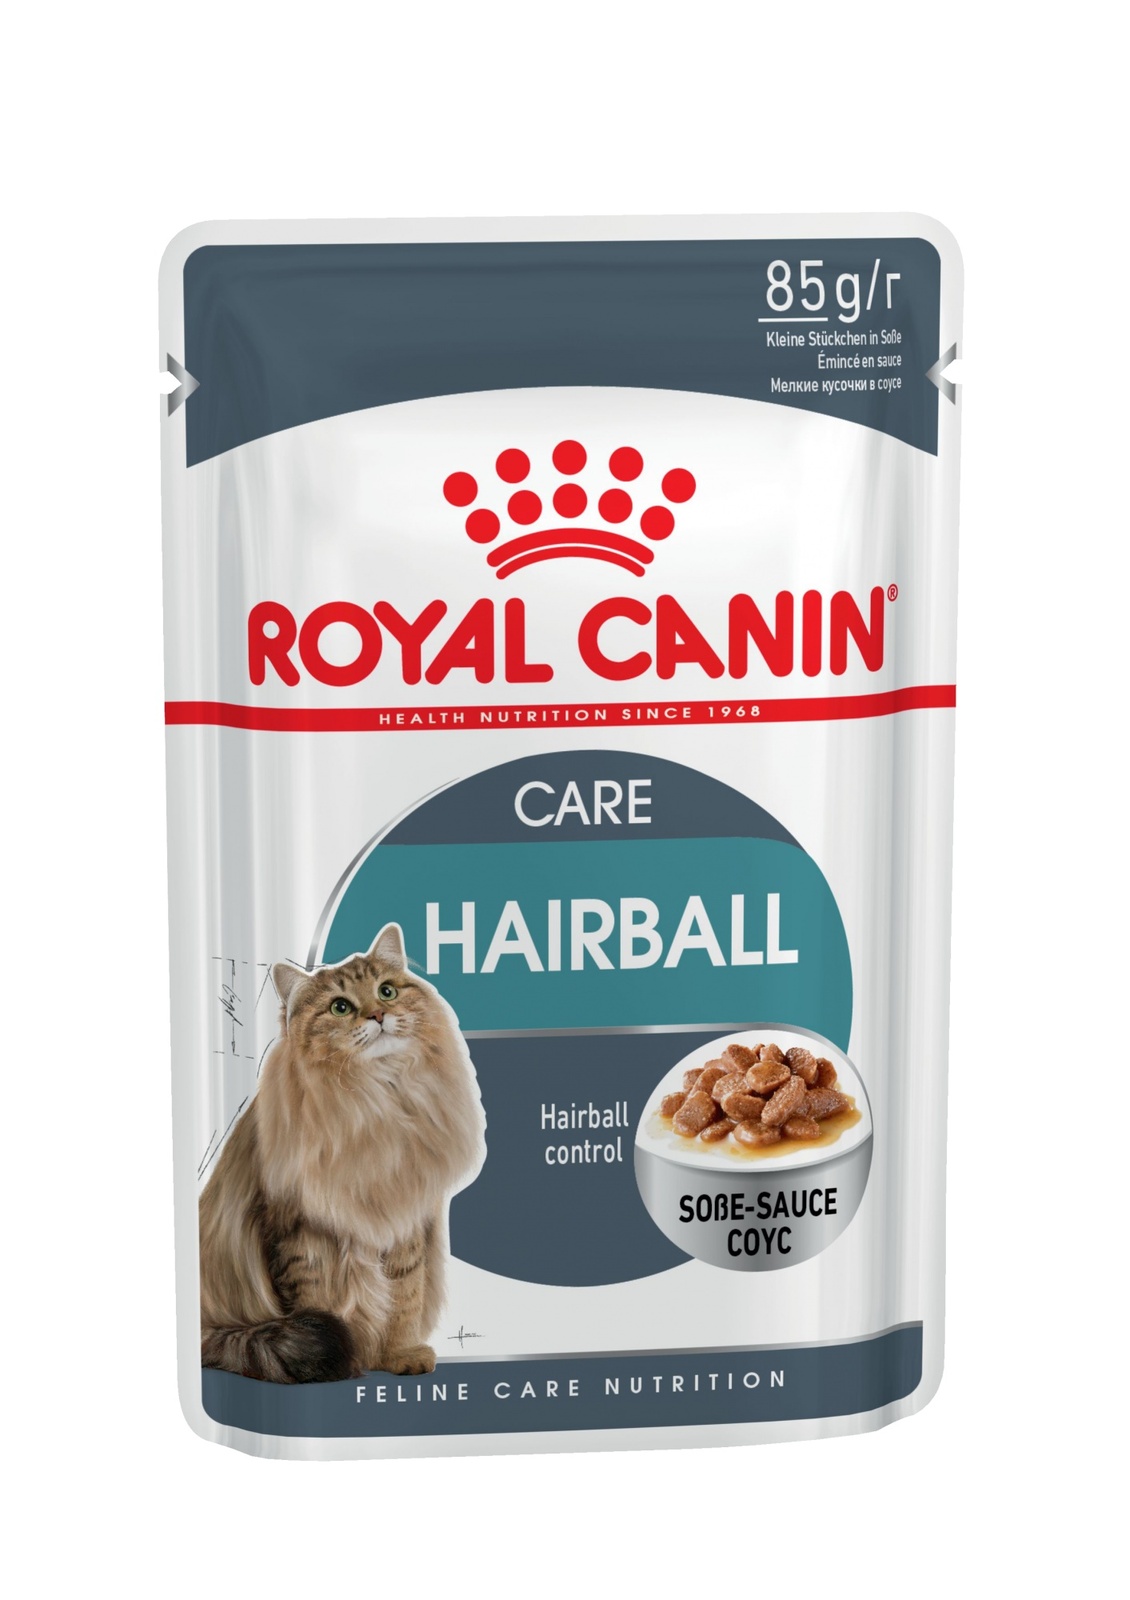 Royal Canin кусочки в соусе для вывода шерсти (85 г)